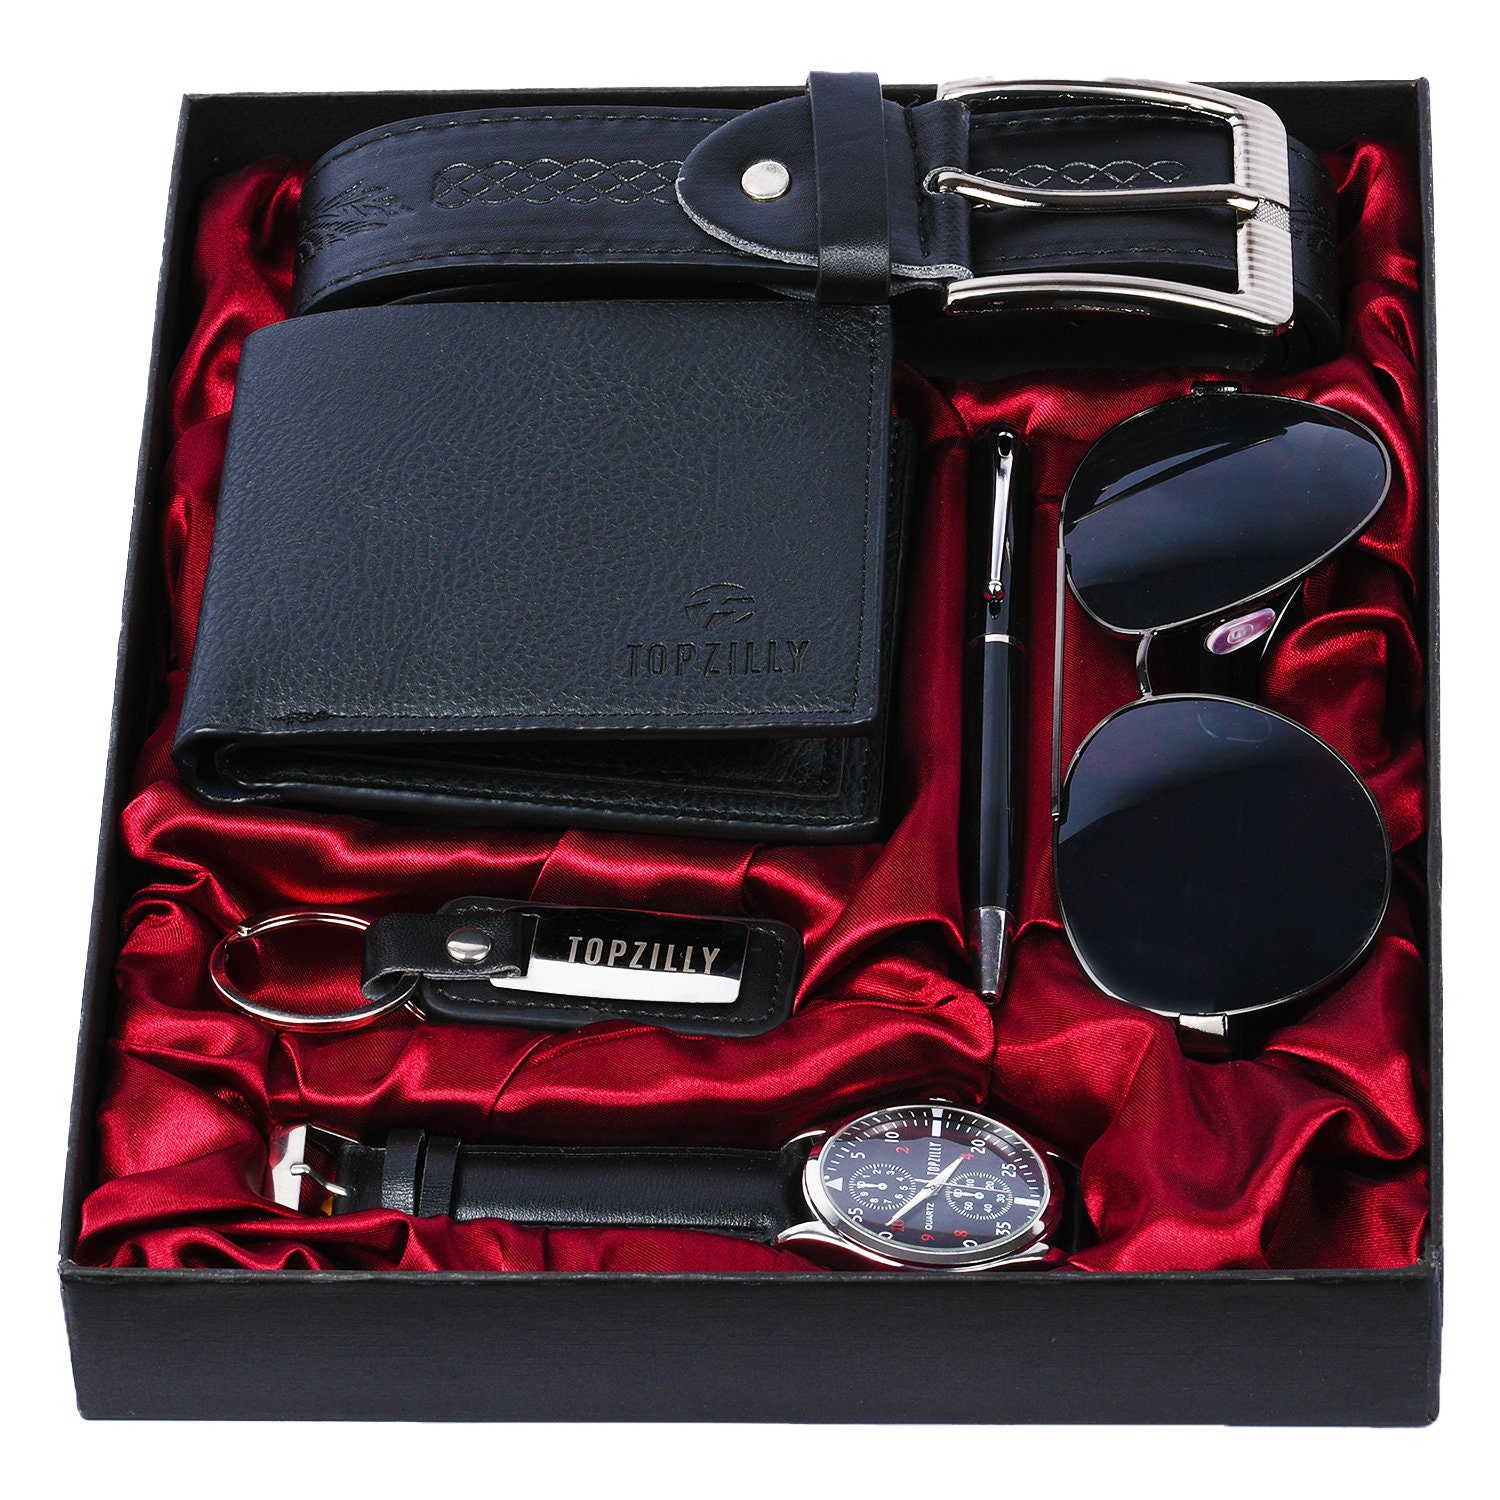 Accesorios de hombre: gafas de sol, reloj, llavero, colgante, cartera,  pulsera y libreta Stock Photo